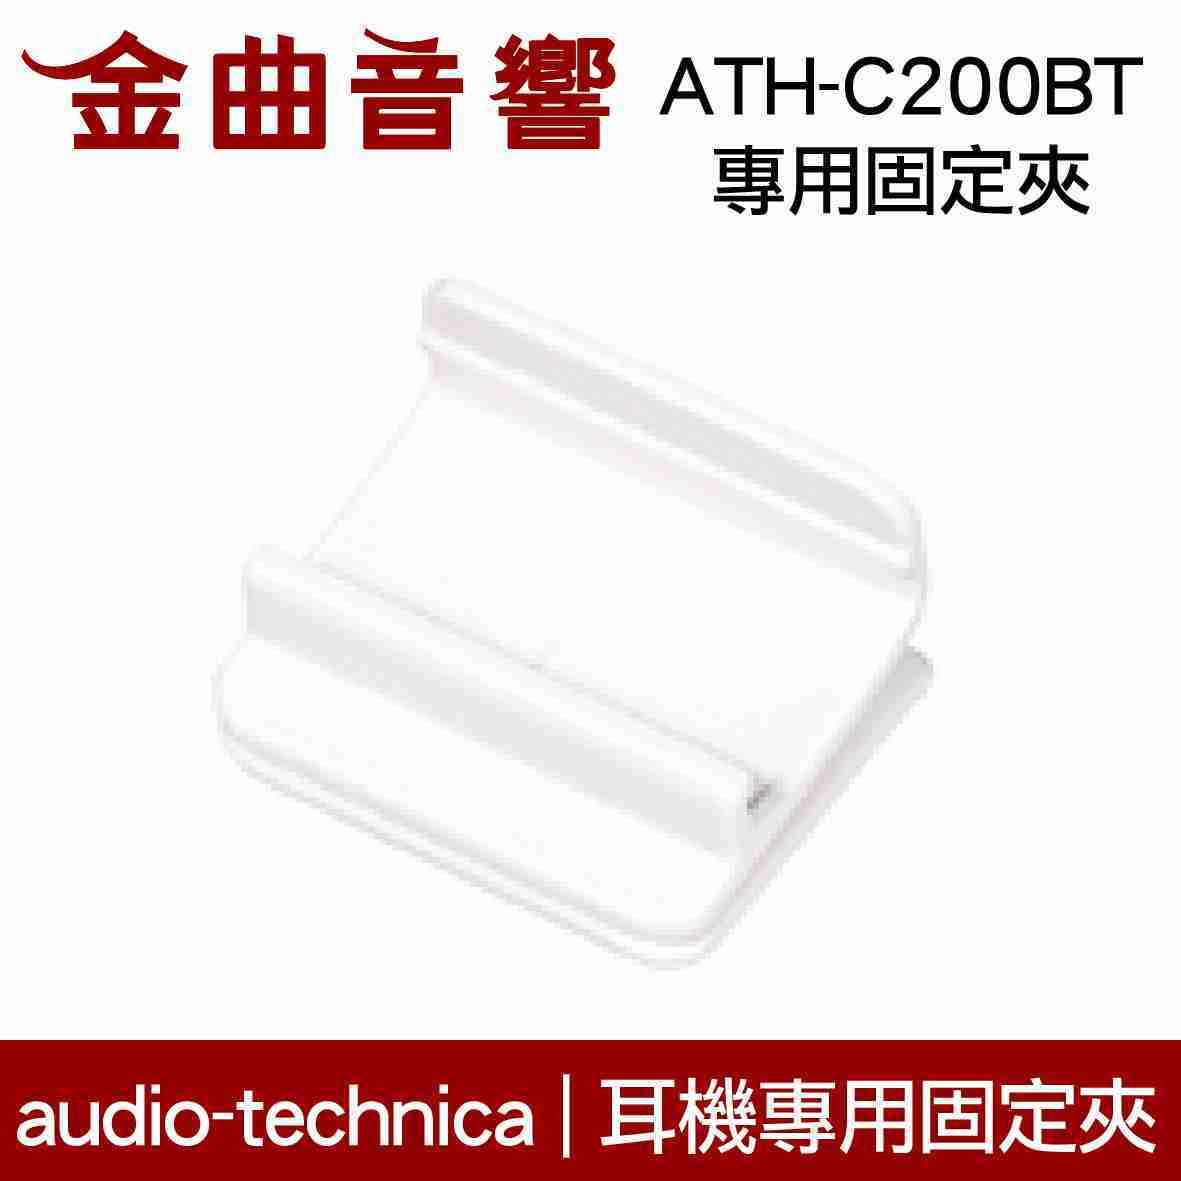 鐵三角 紅色 固定夾 適用 ATH-C200BT 耳機 專用夾 | 金曲音響